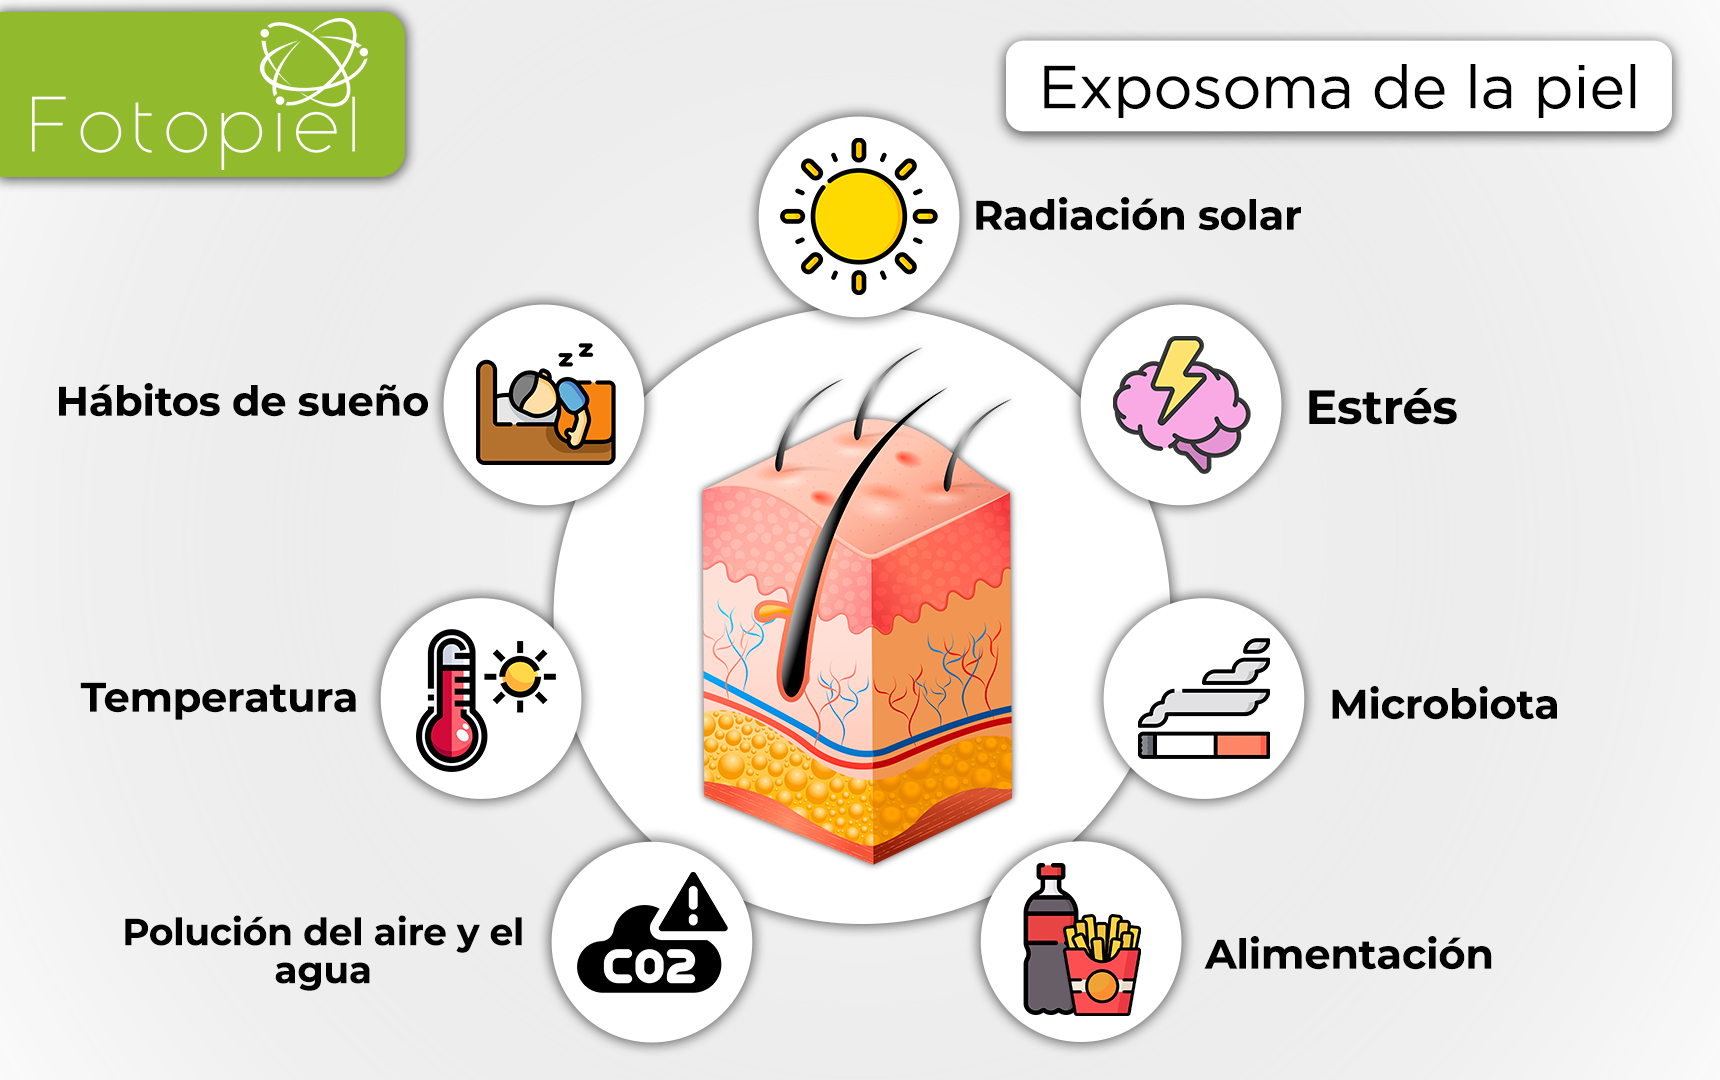 Algunos de los elementos agresores de la piel se centran en el medio ambiente “exposoma”: la radiación ultravioleta, la contaminación del aire y los pesticidas pueden ser absorbidos por la piel.